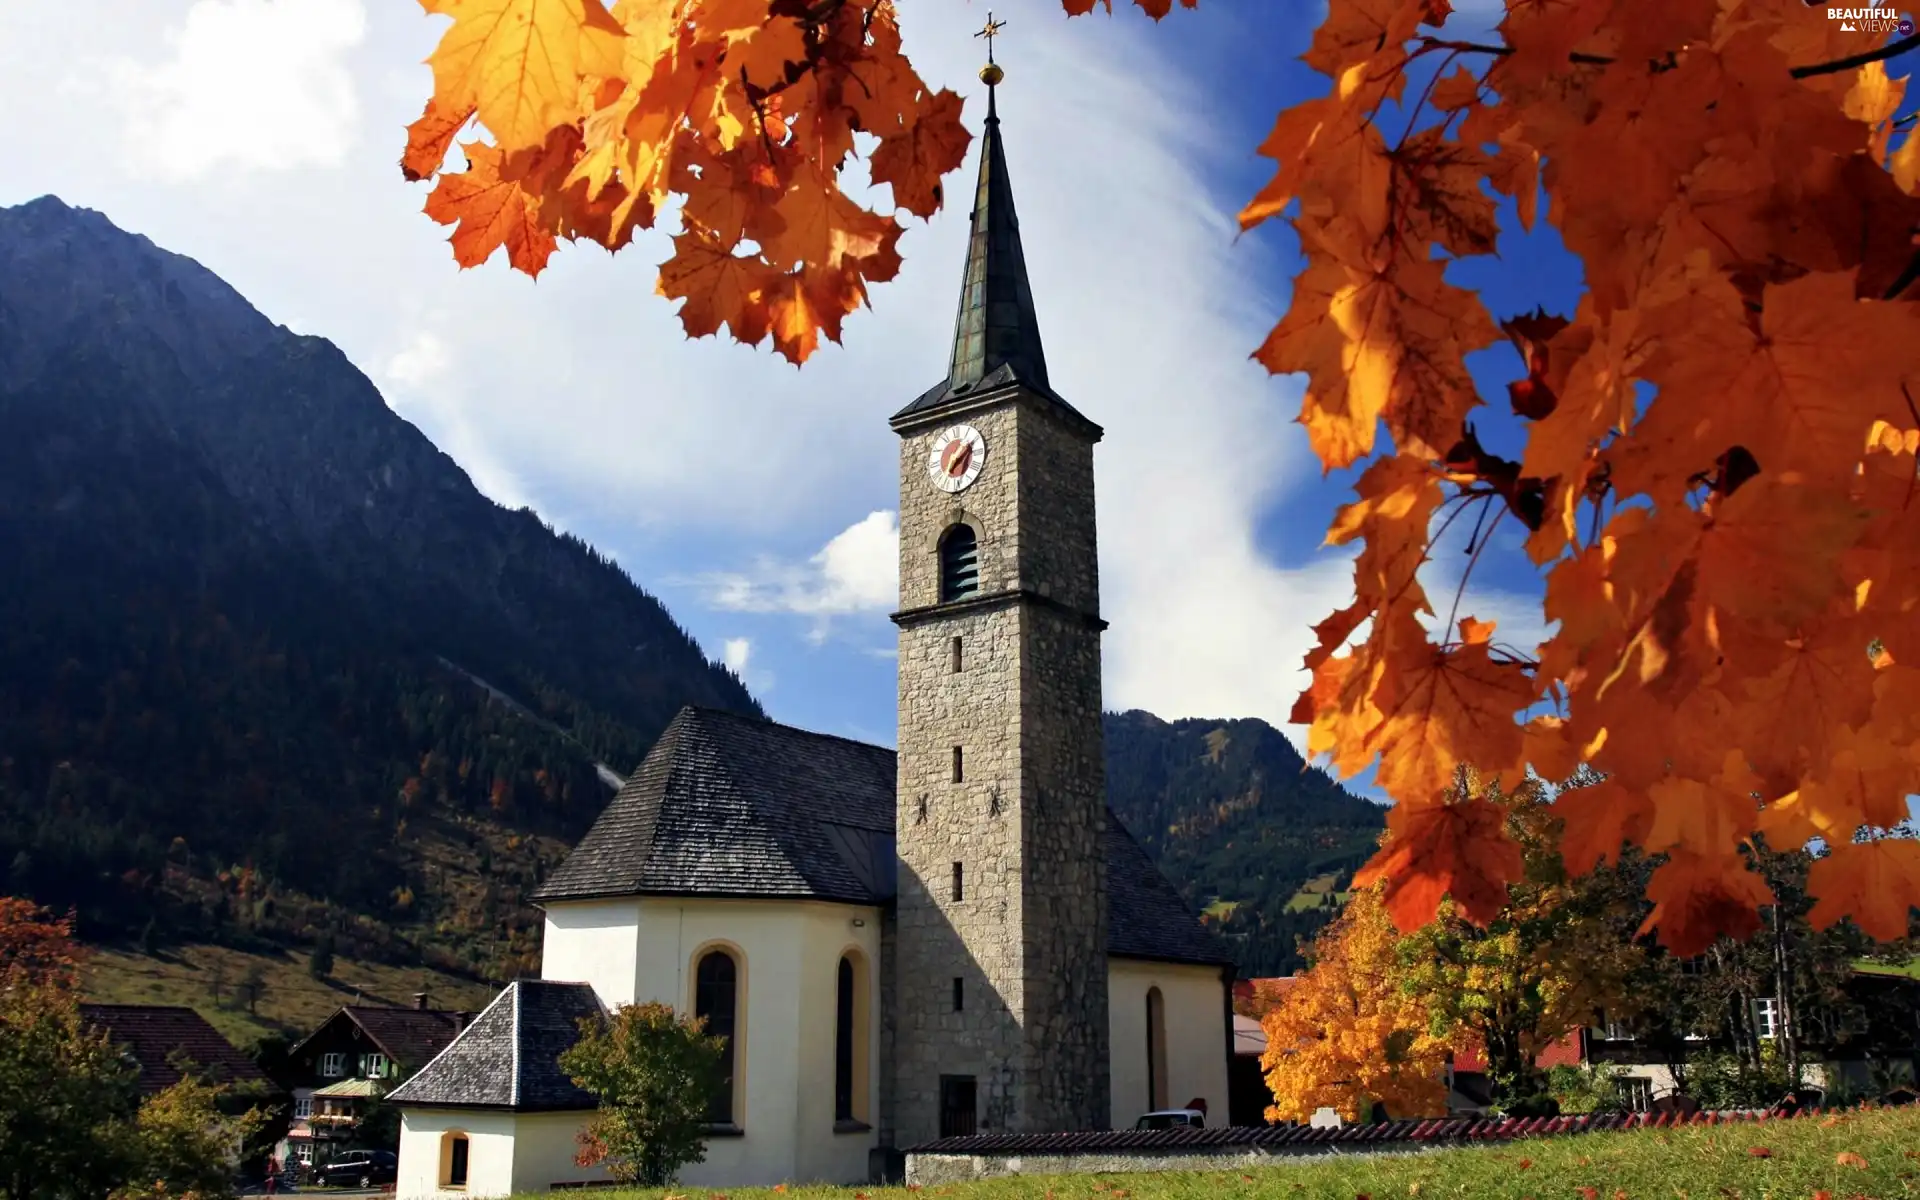 trees, viewes, Mountains, church, Bavaria